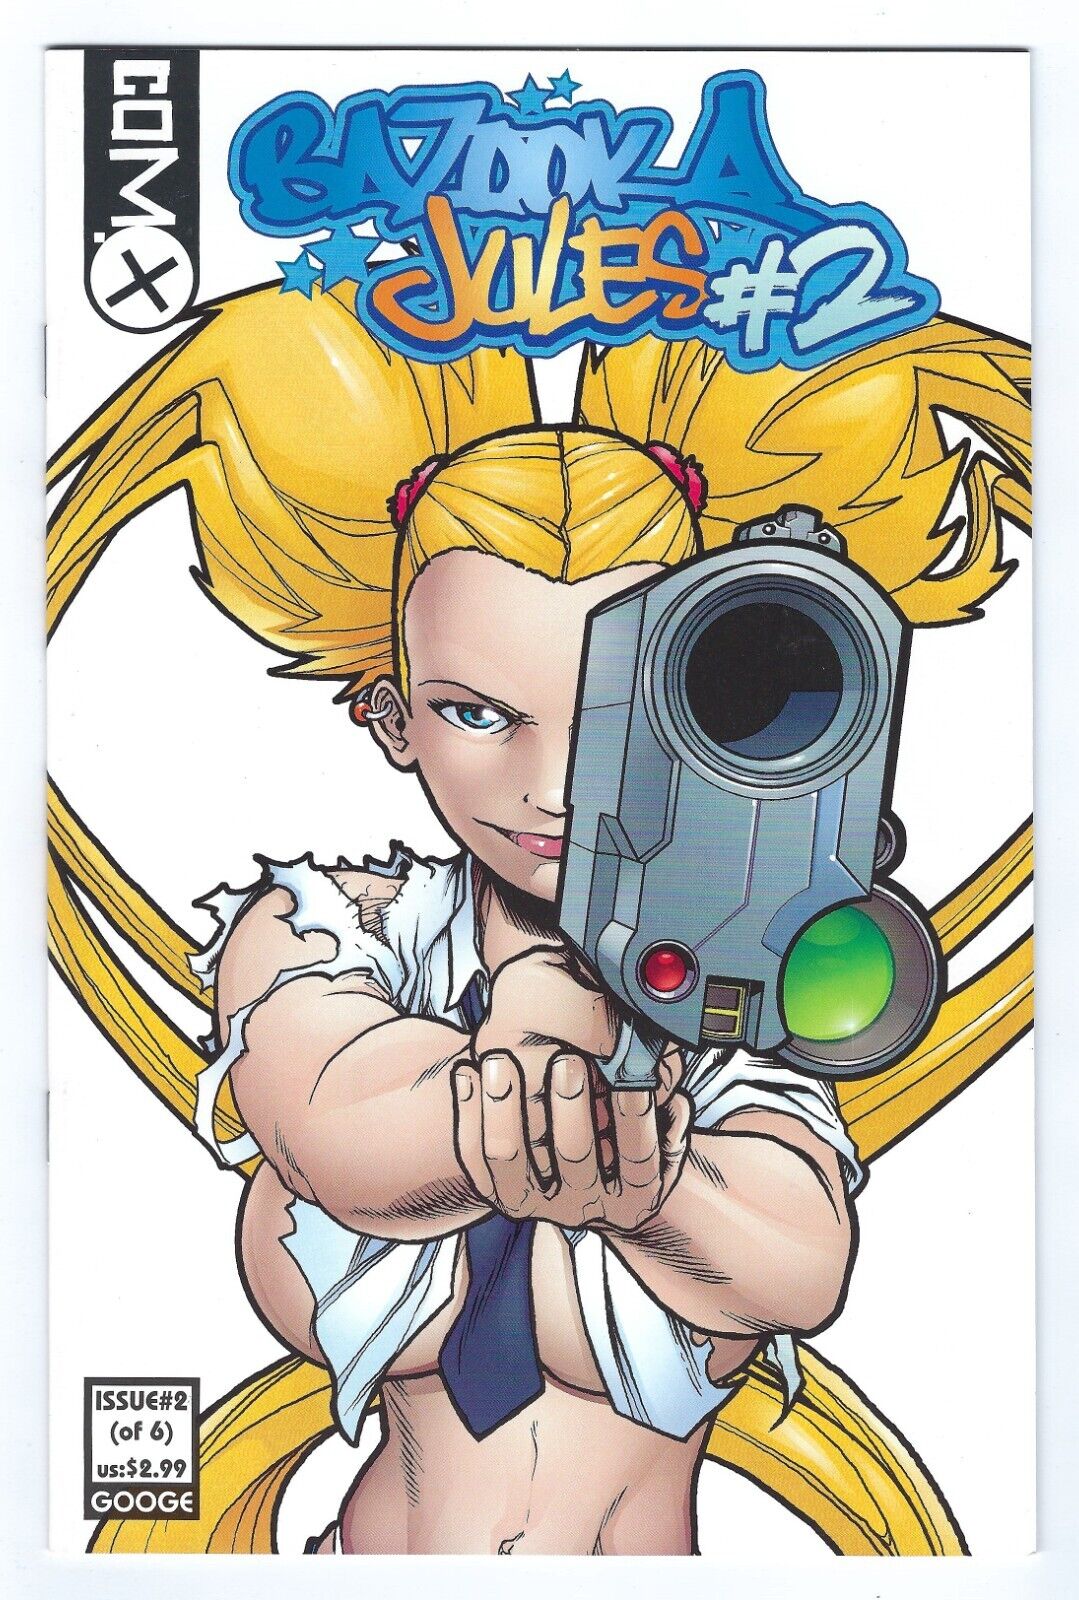 Bazooka Jules #2  NM 2001 Classic Bad Girl Comic